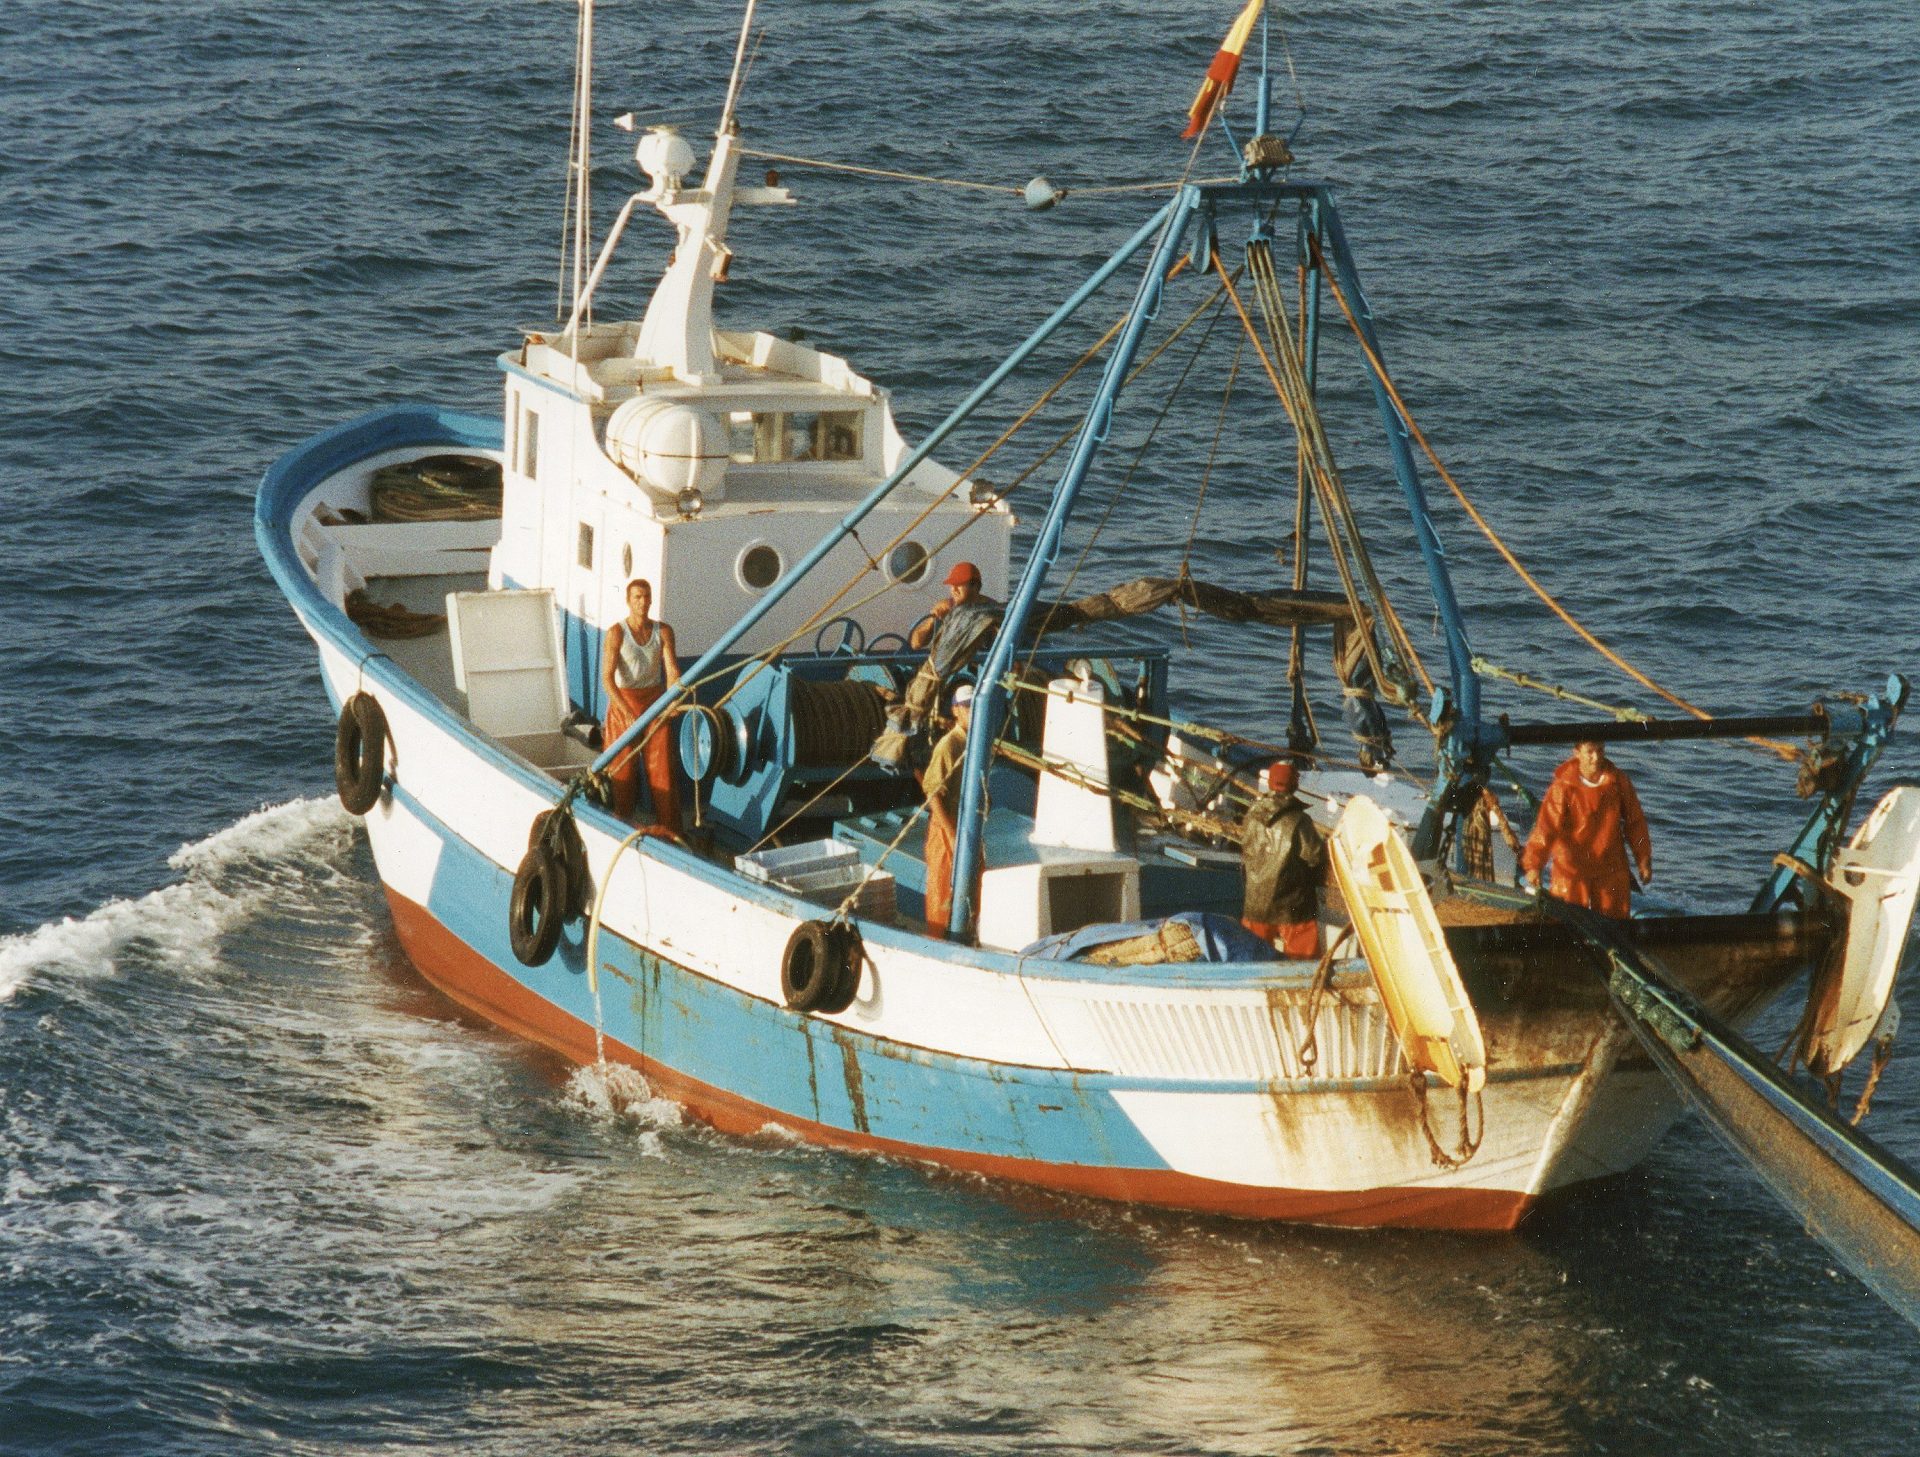 Miembros de Greenpeace detectaron  la presencia de buques pesqueros de arrastre faenando ilegalmente en las costas de Levante, cerca de Alicante.  EFE